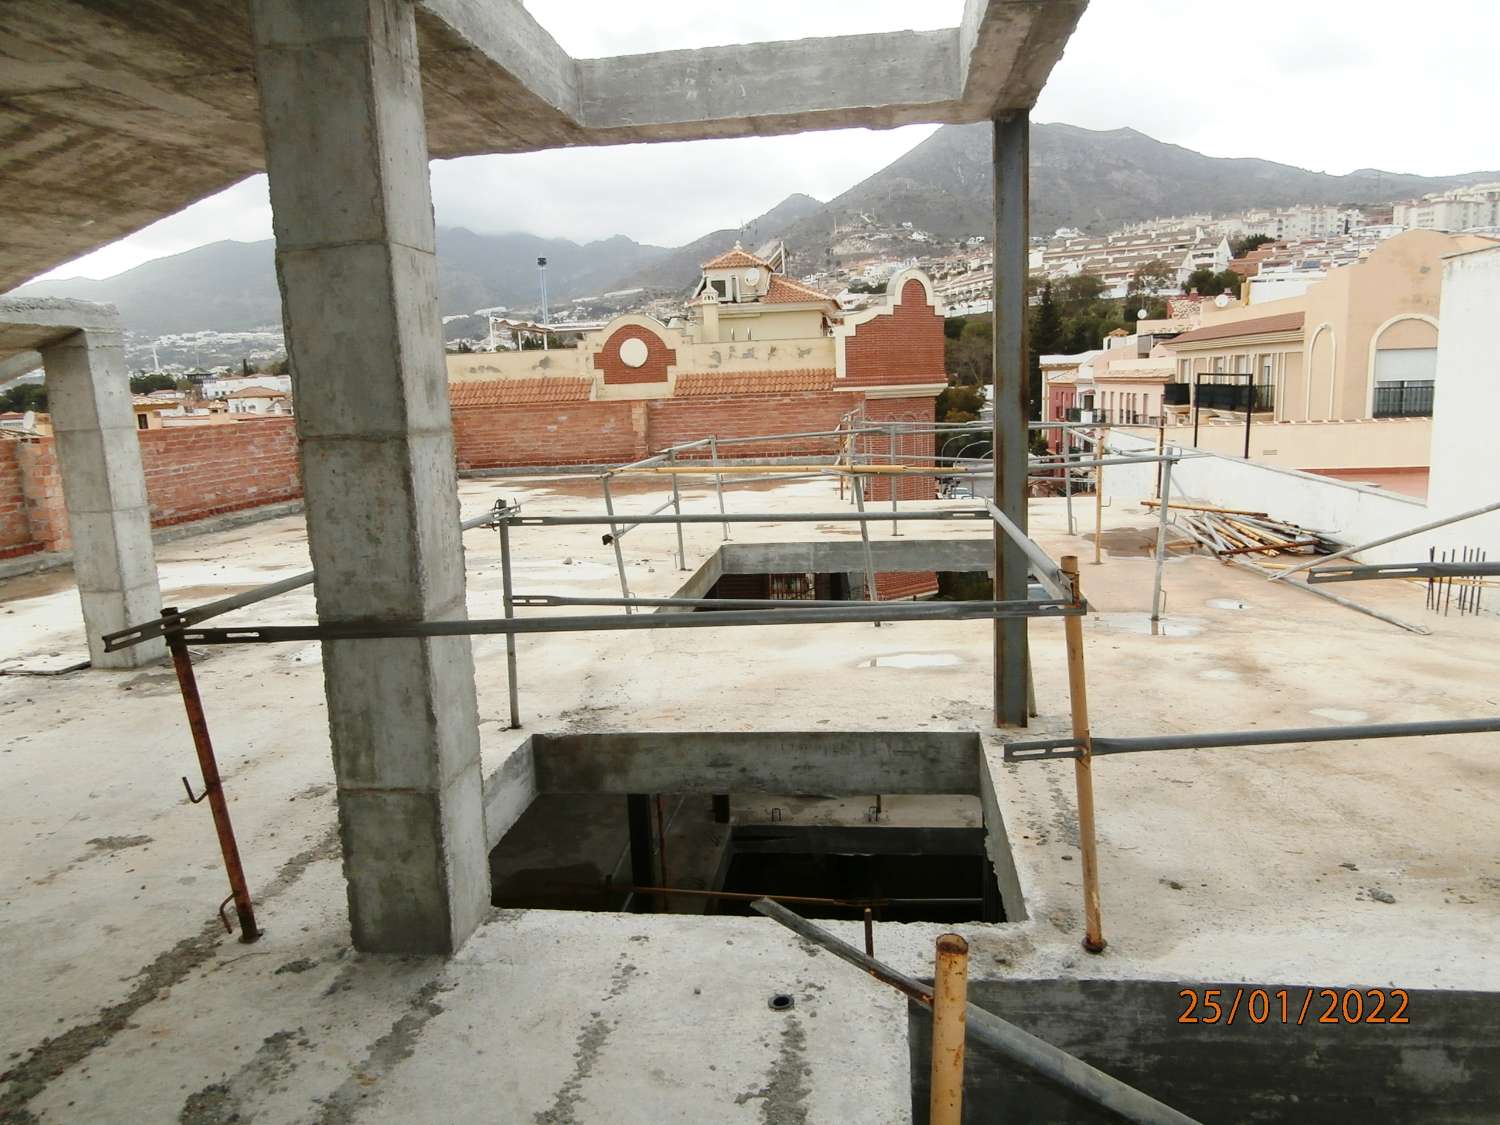 Hotel zu verkaufen, Arroyo de la Miel, Benalmádena, (Preis abgeschlossen), es gibt andere Optionen, derzeit Projekt im Bau.